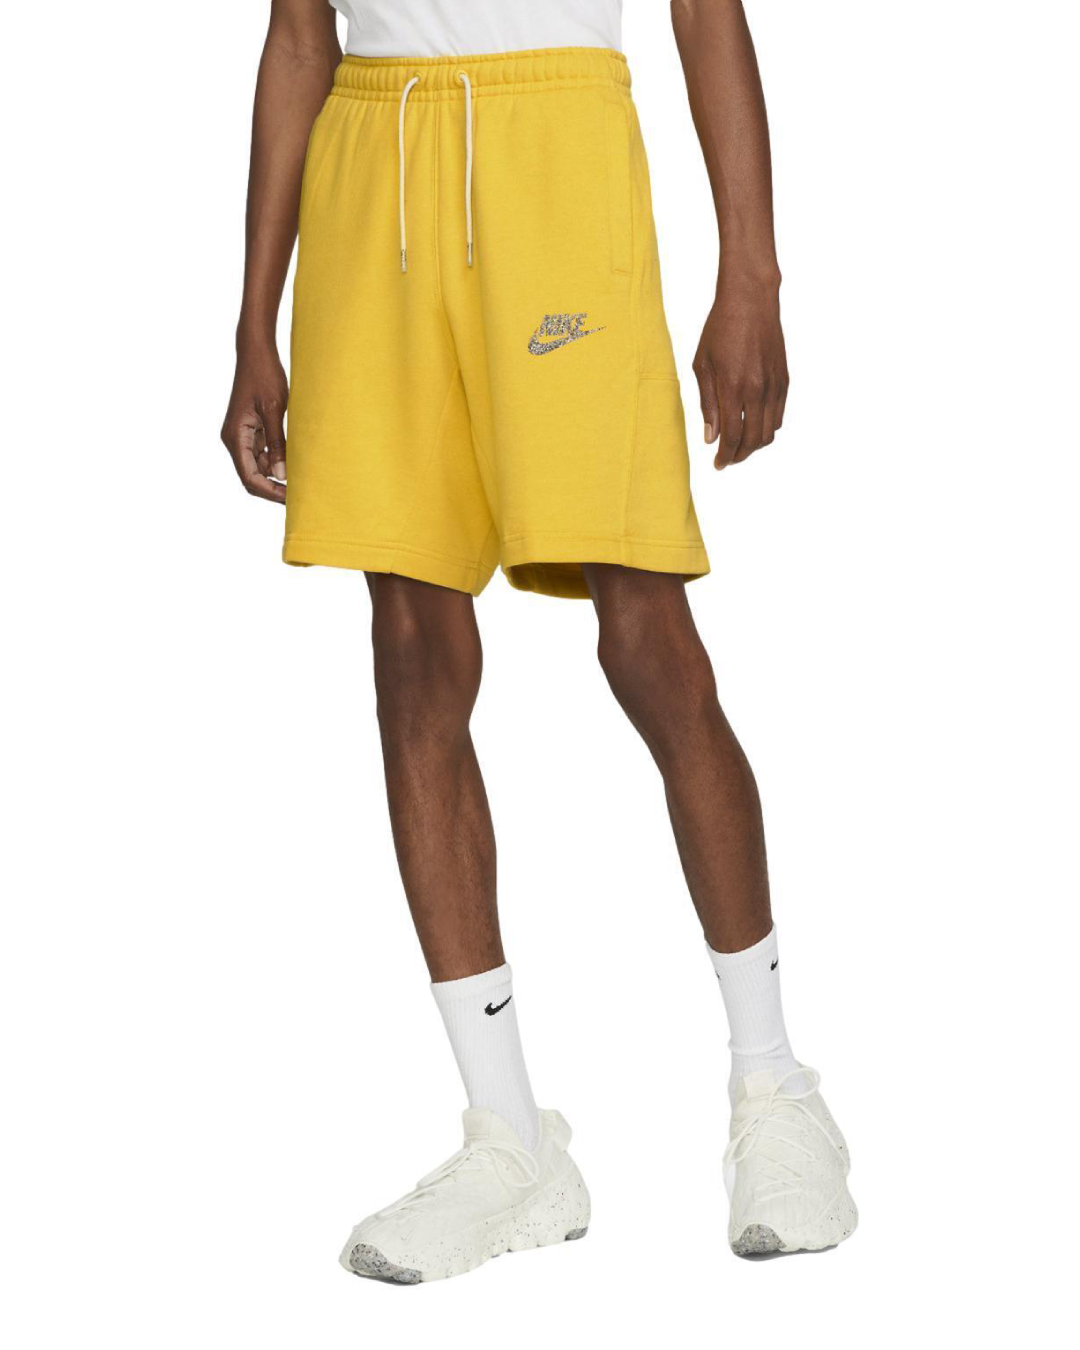 Спортивные шорты мужские Nike Nsw Revival Flc Short C DM5635-709 желтые M